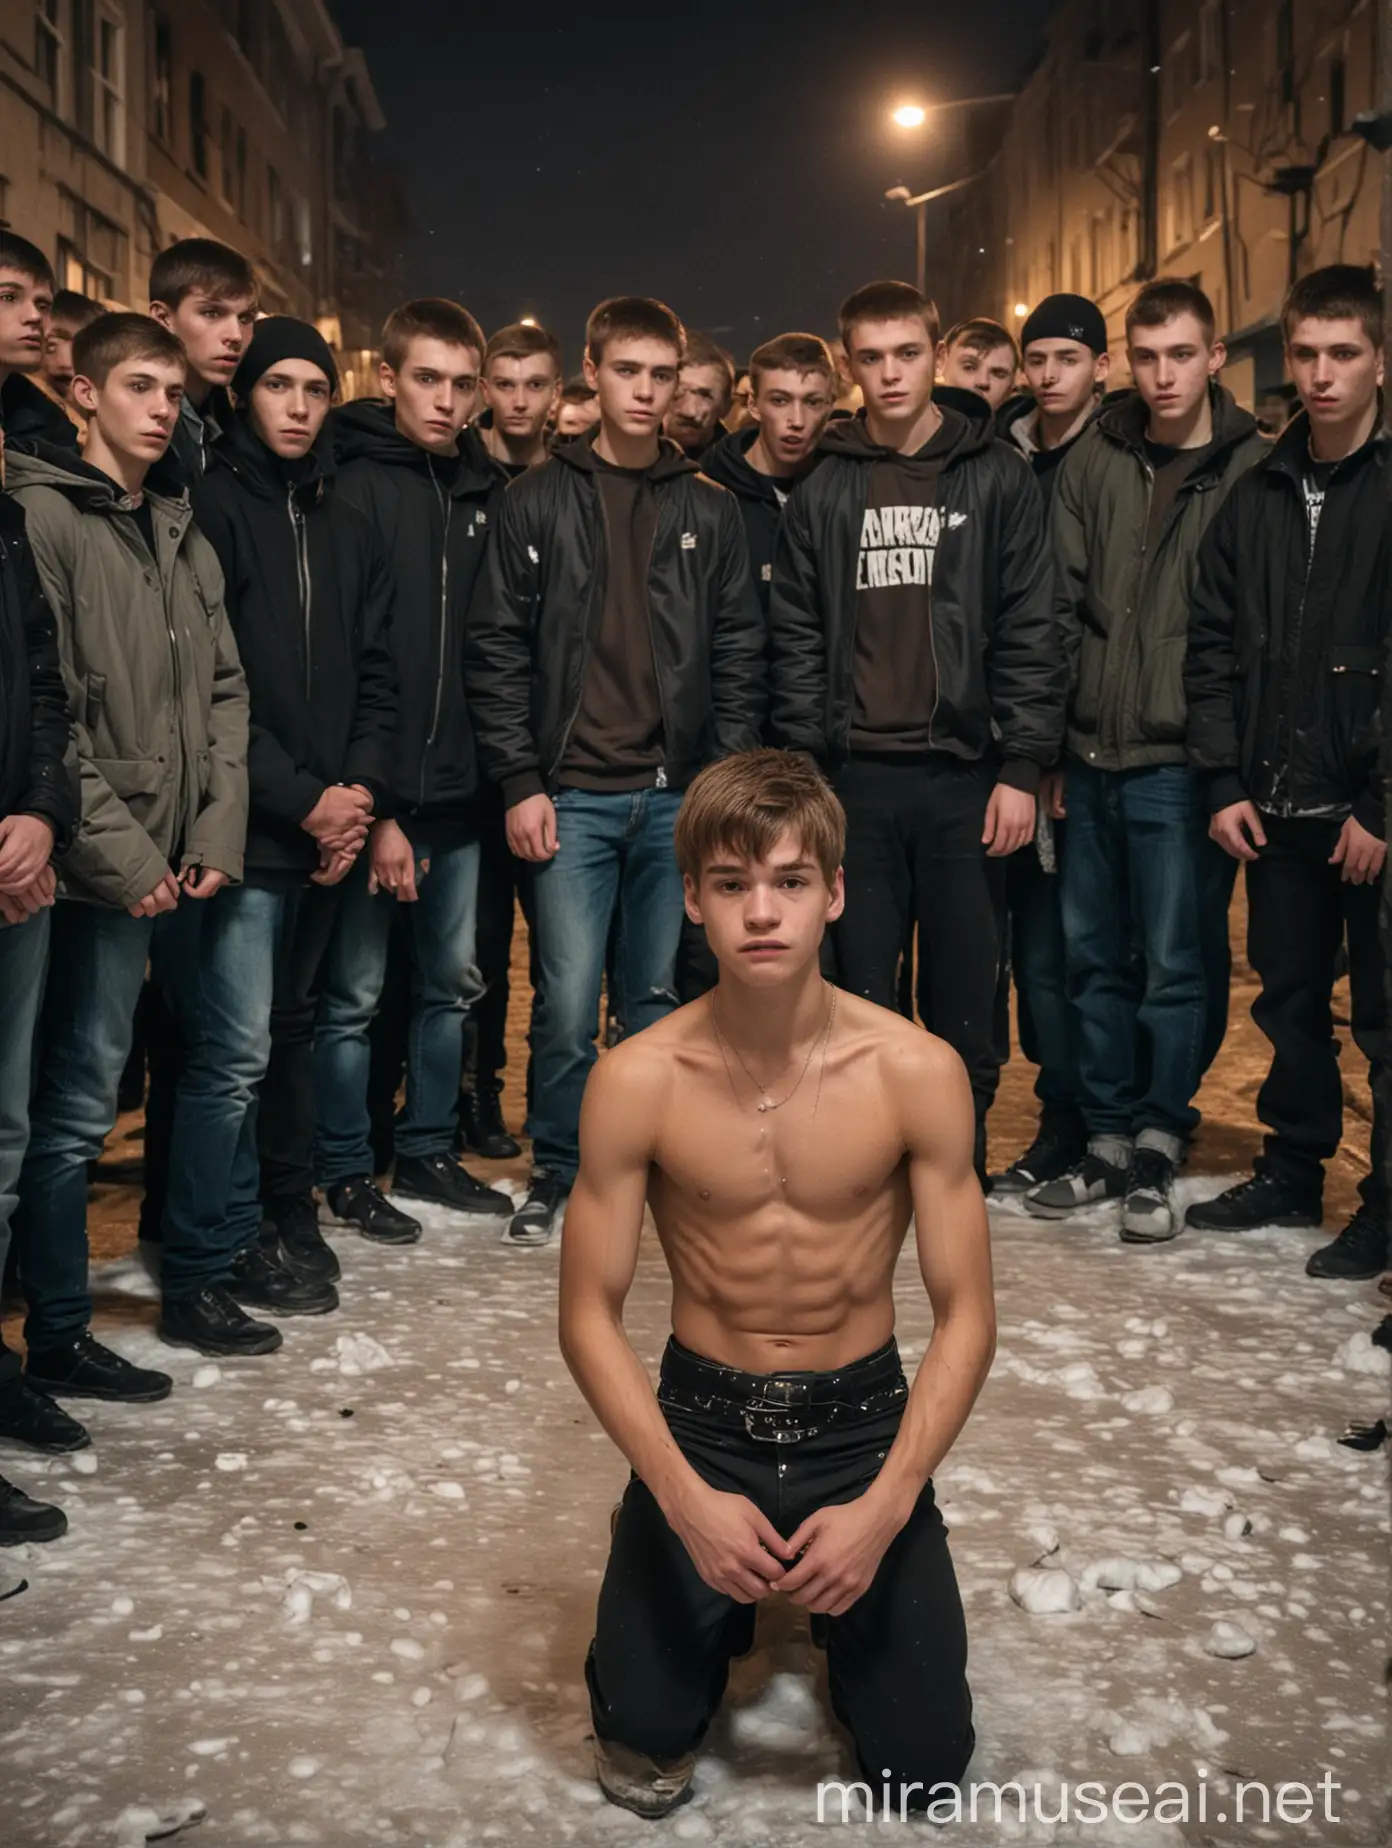 Fearful Twink Kneeling Before Teenage Tormentors in St Petersburg Slum at Night